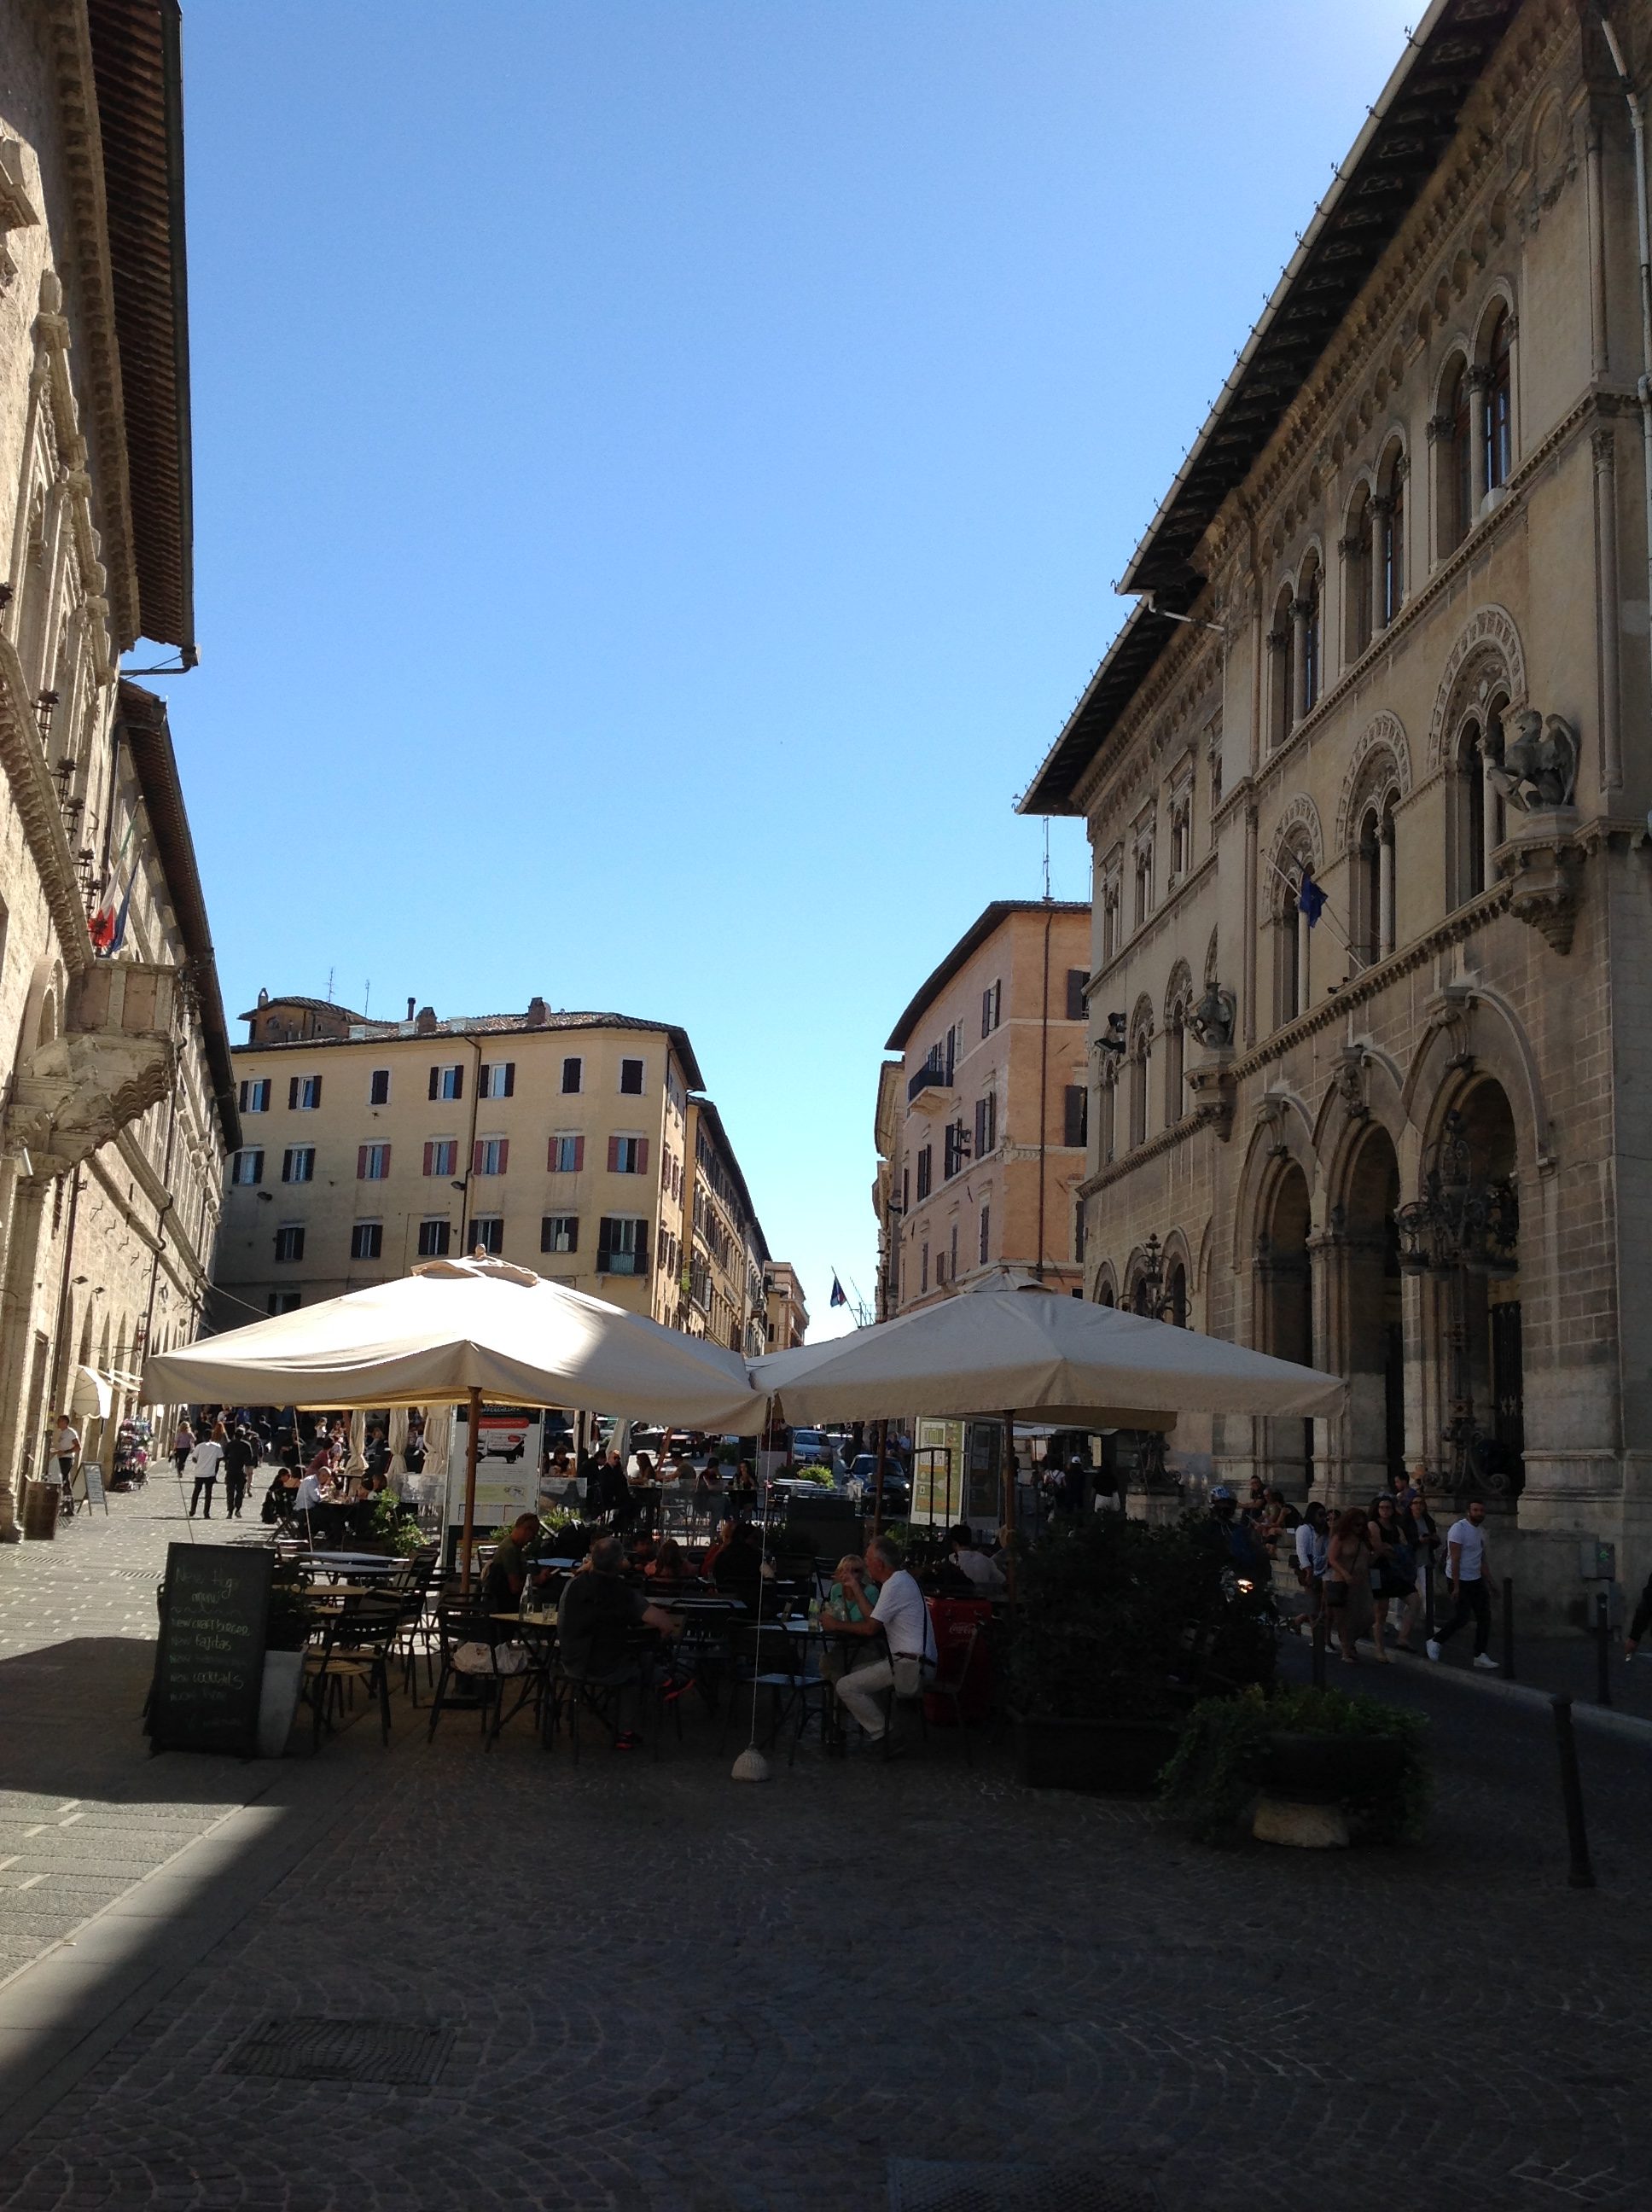 Piazzas of Perugia